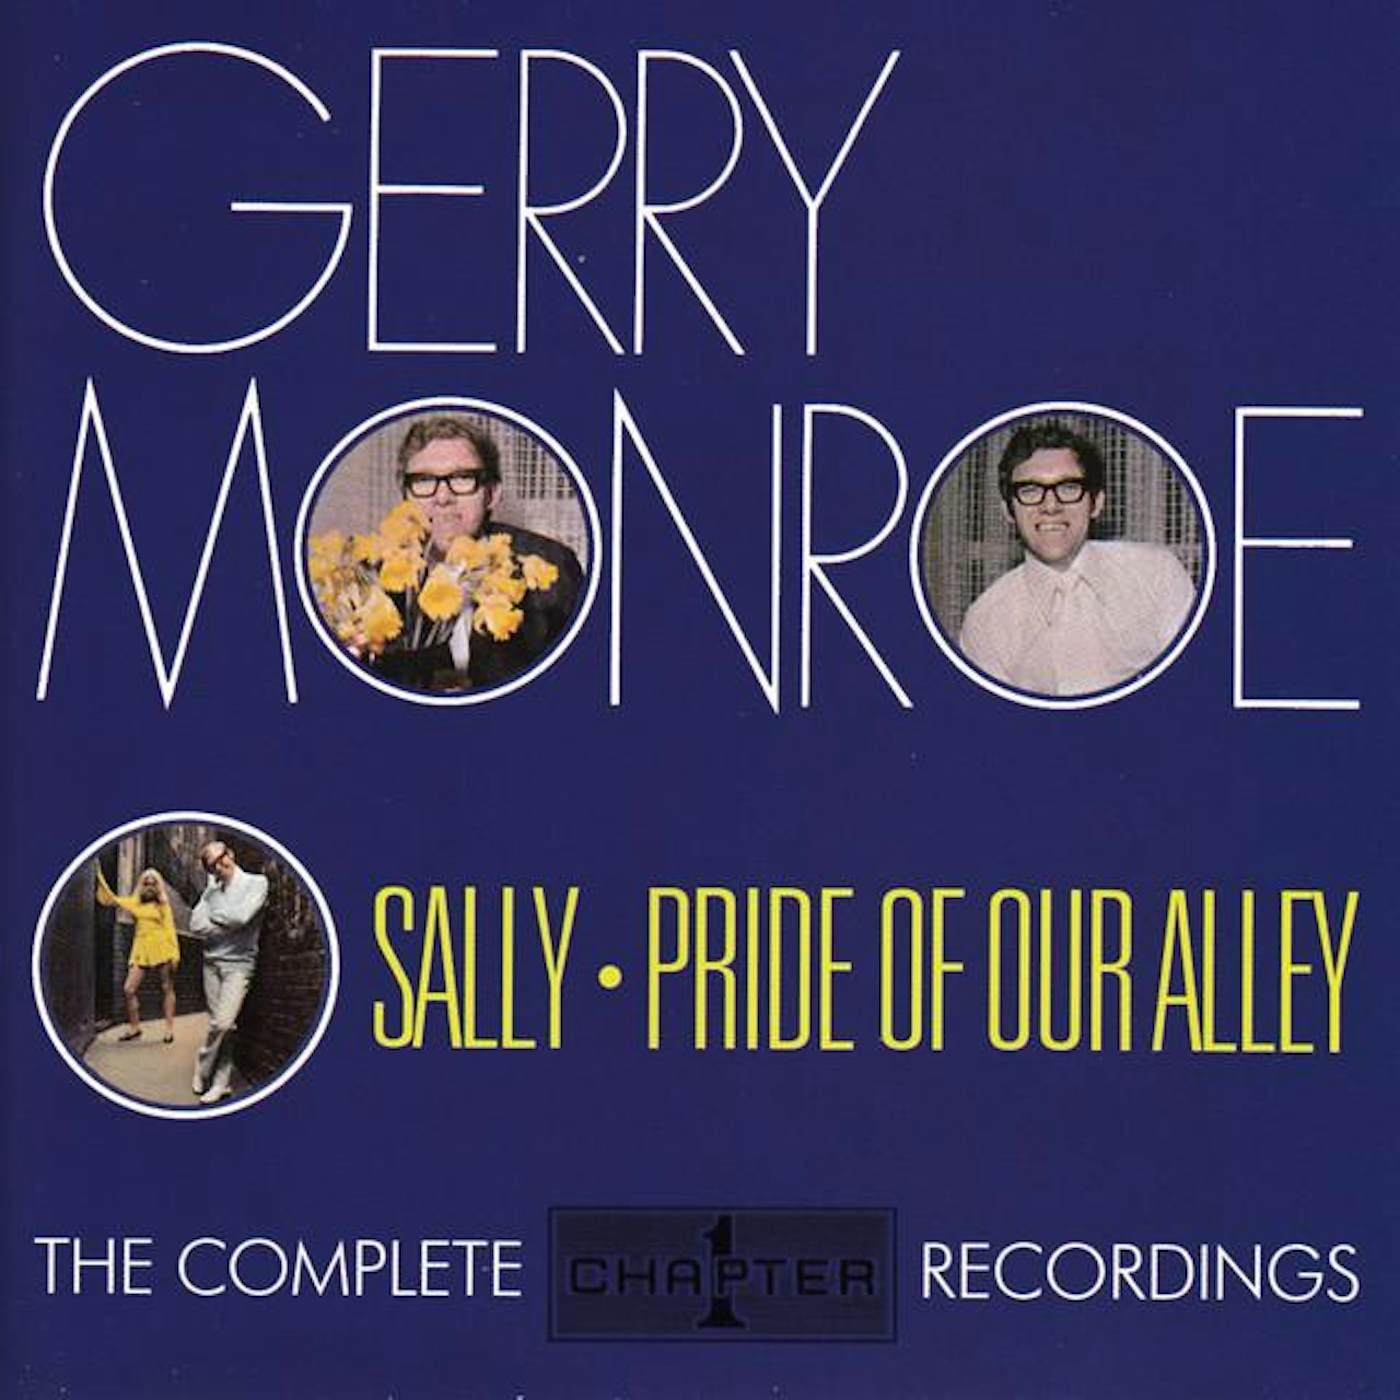 Gerry Monroe